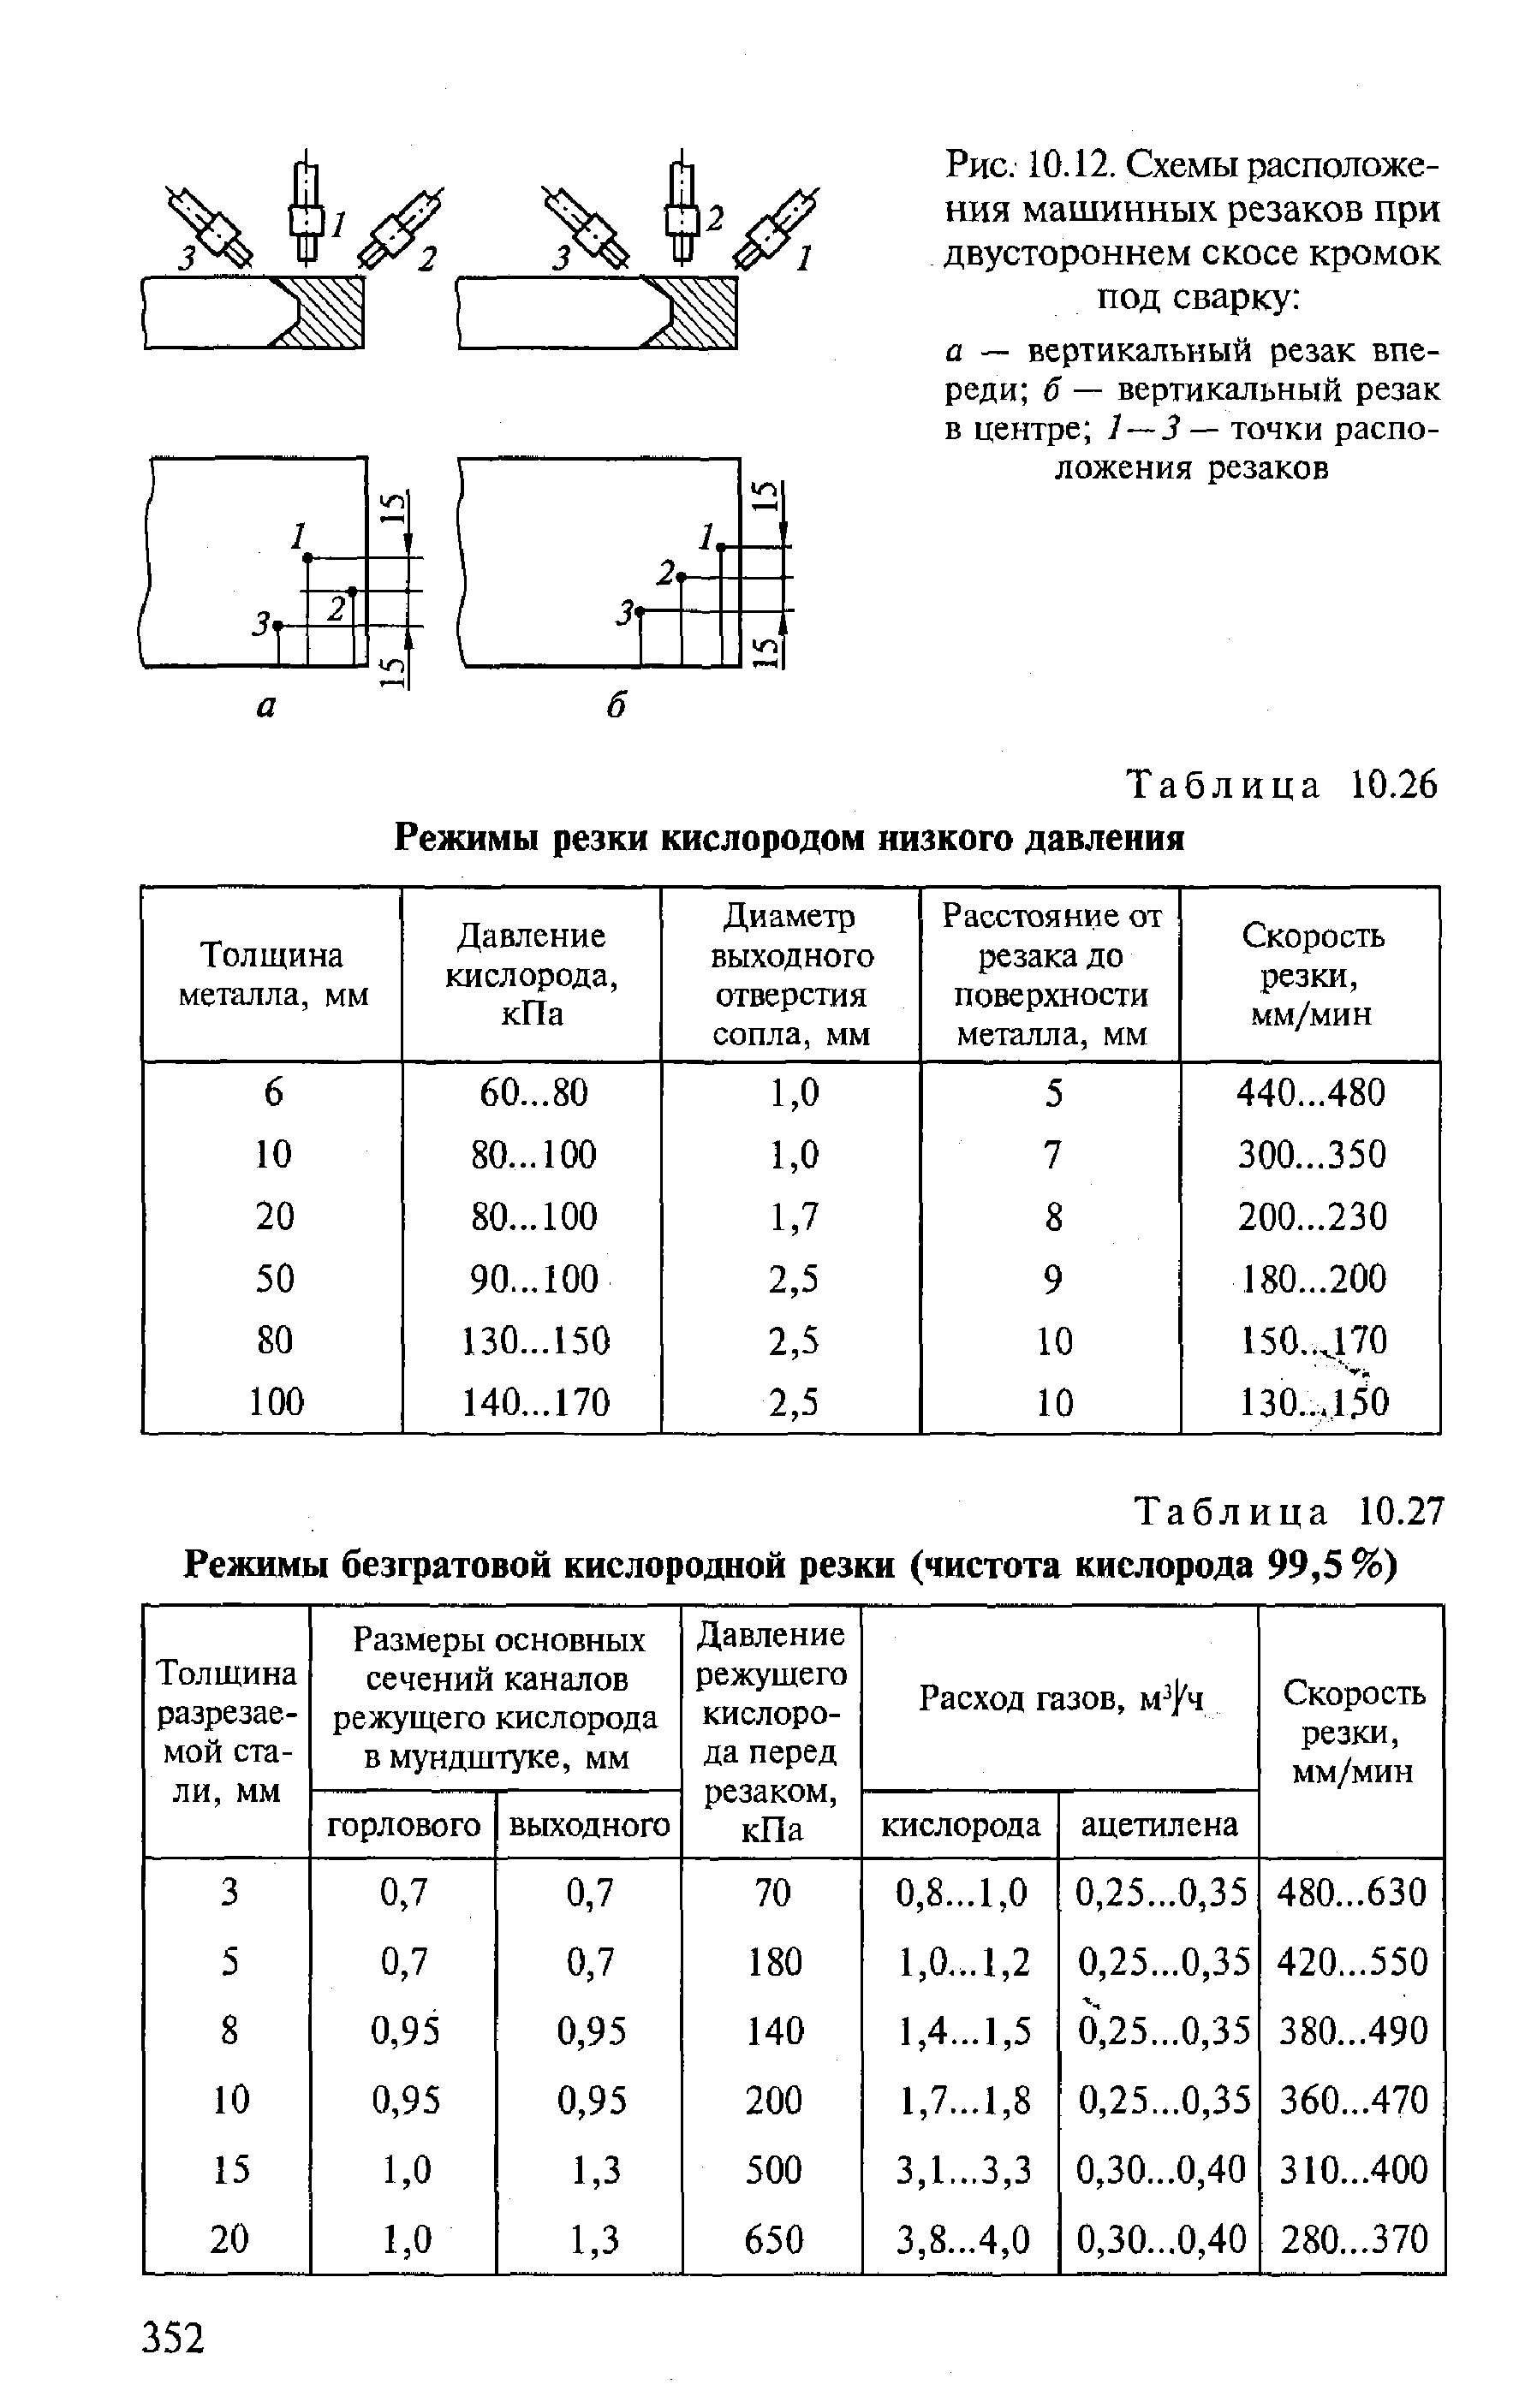 Таблица 10.26 Режимы резки кислородом низкого давления
